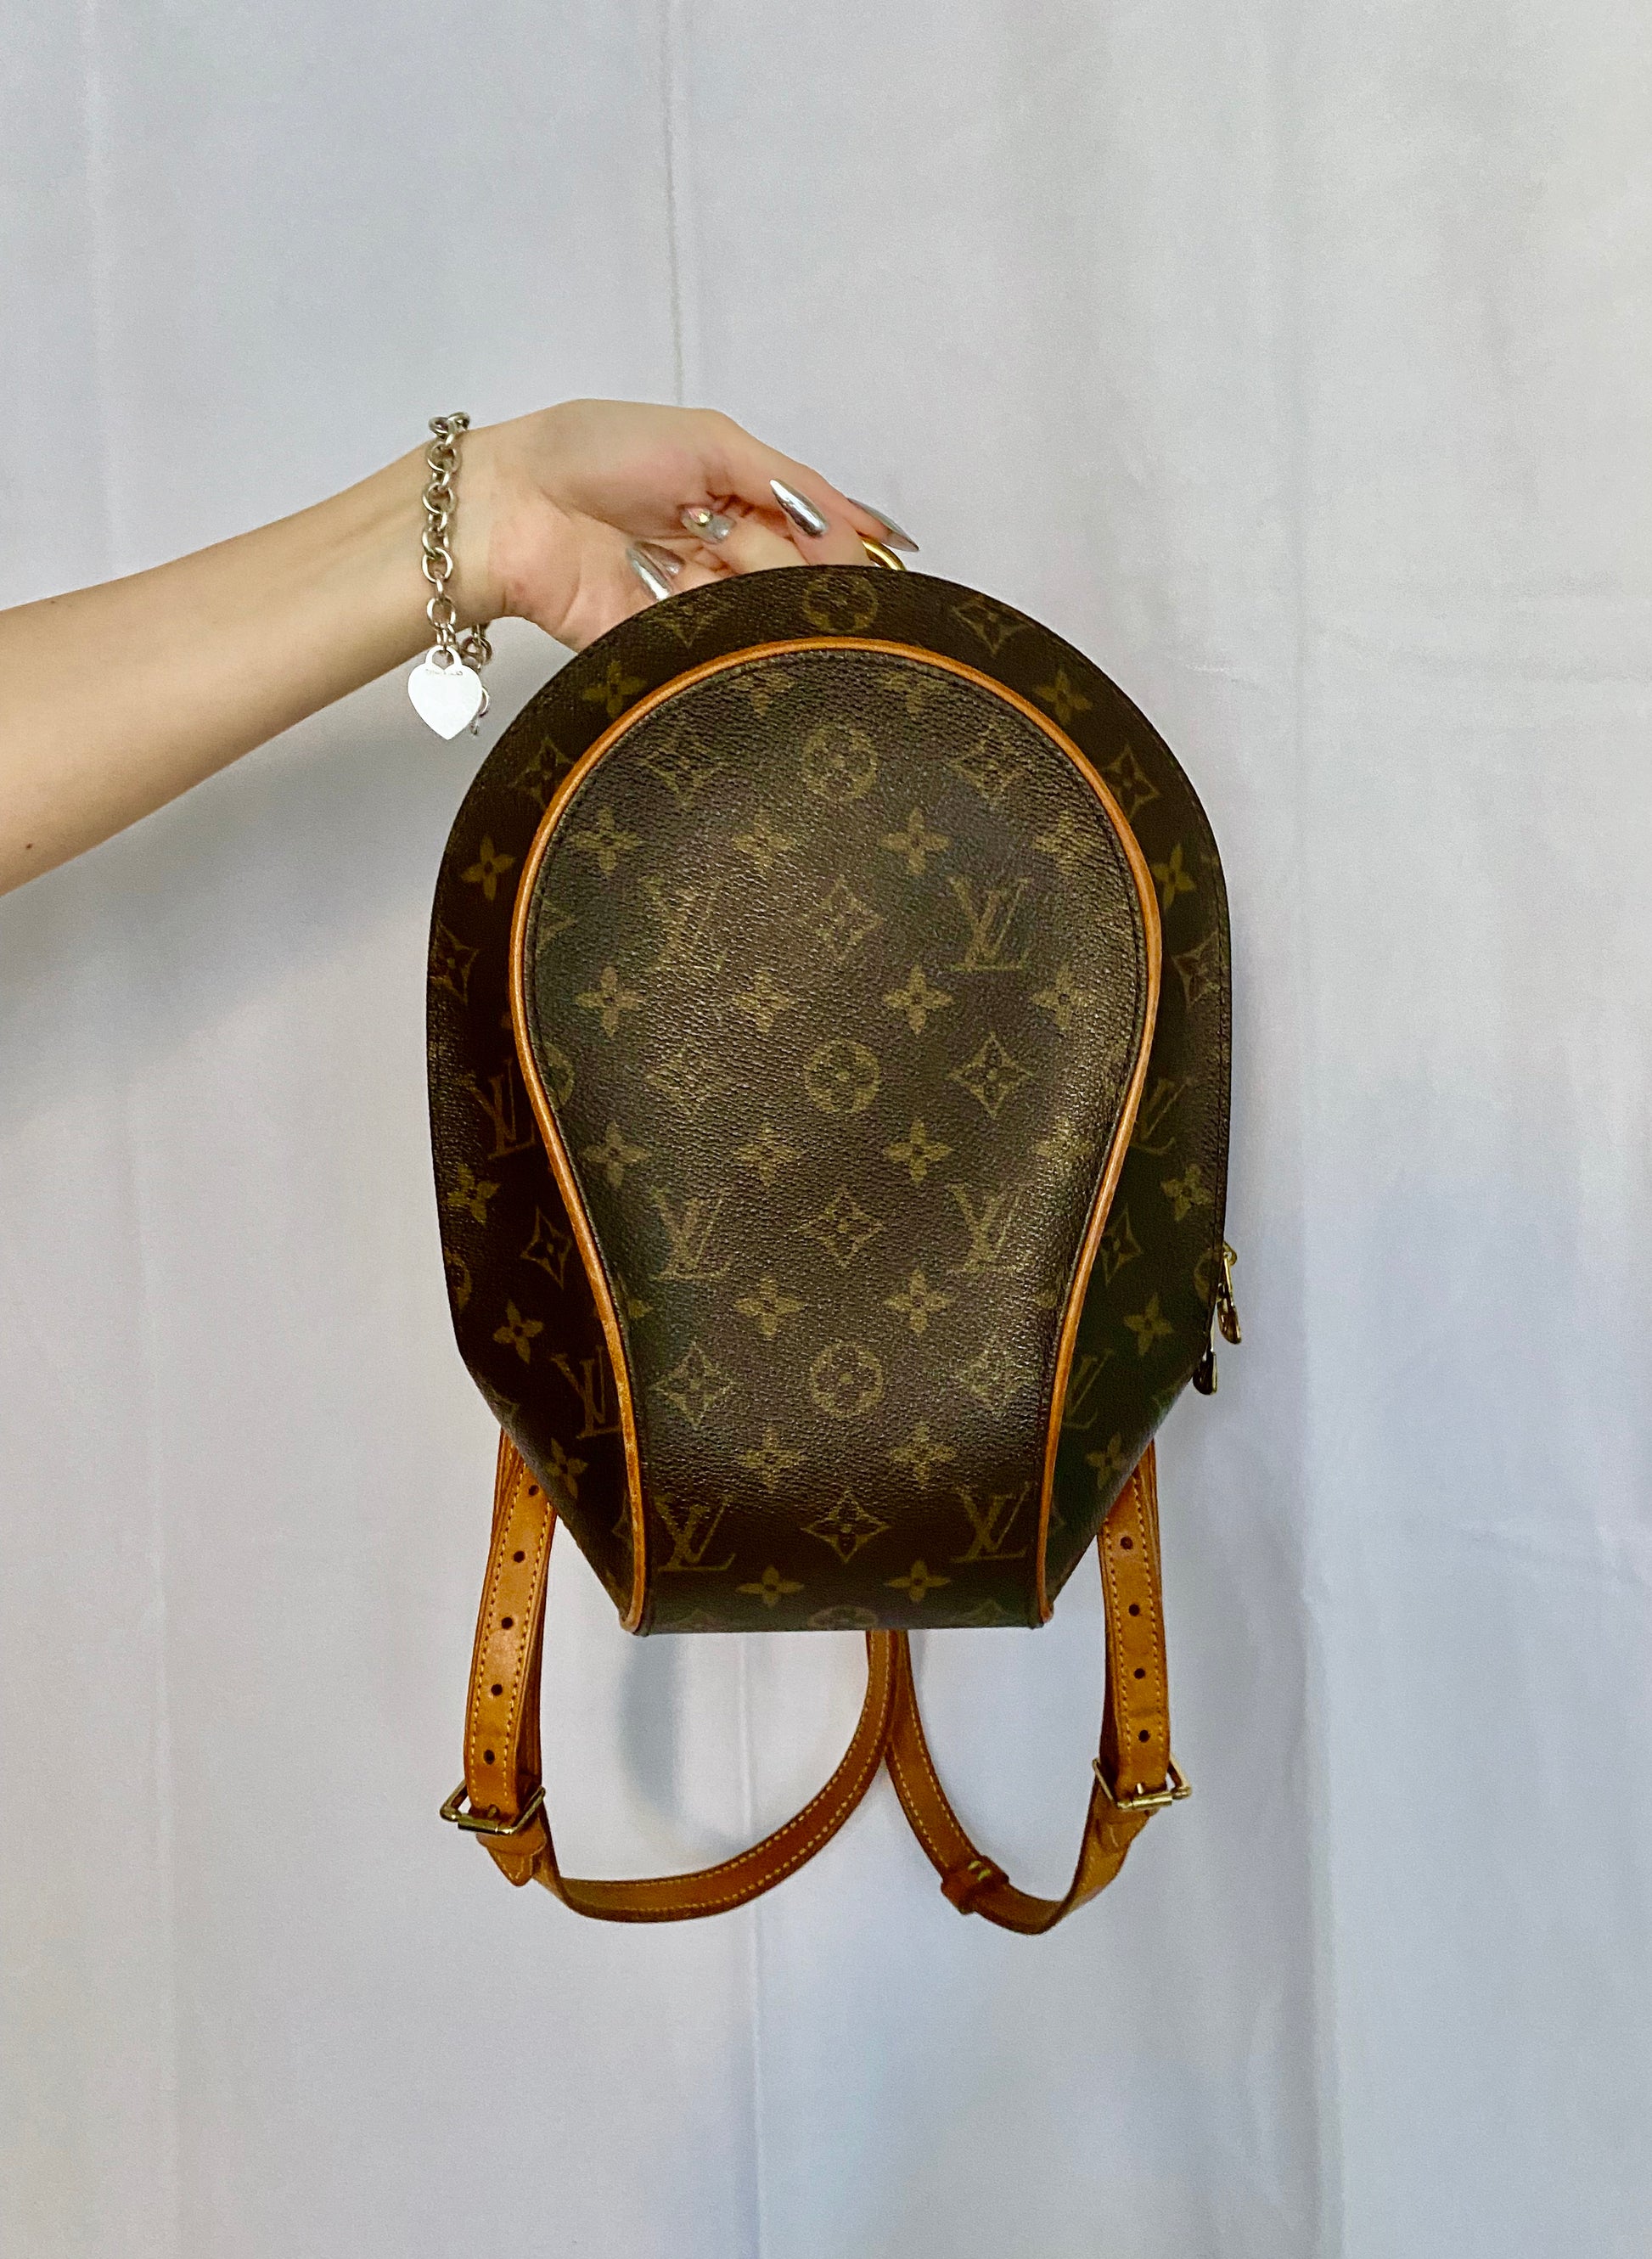 Louis Vuitton Vintage Monogram Ellipse Backpack - Brown Backpacks